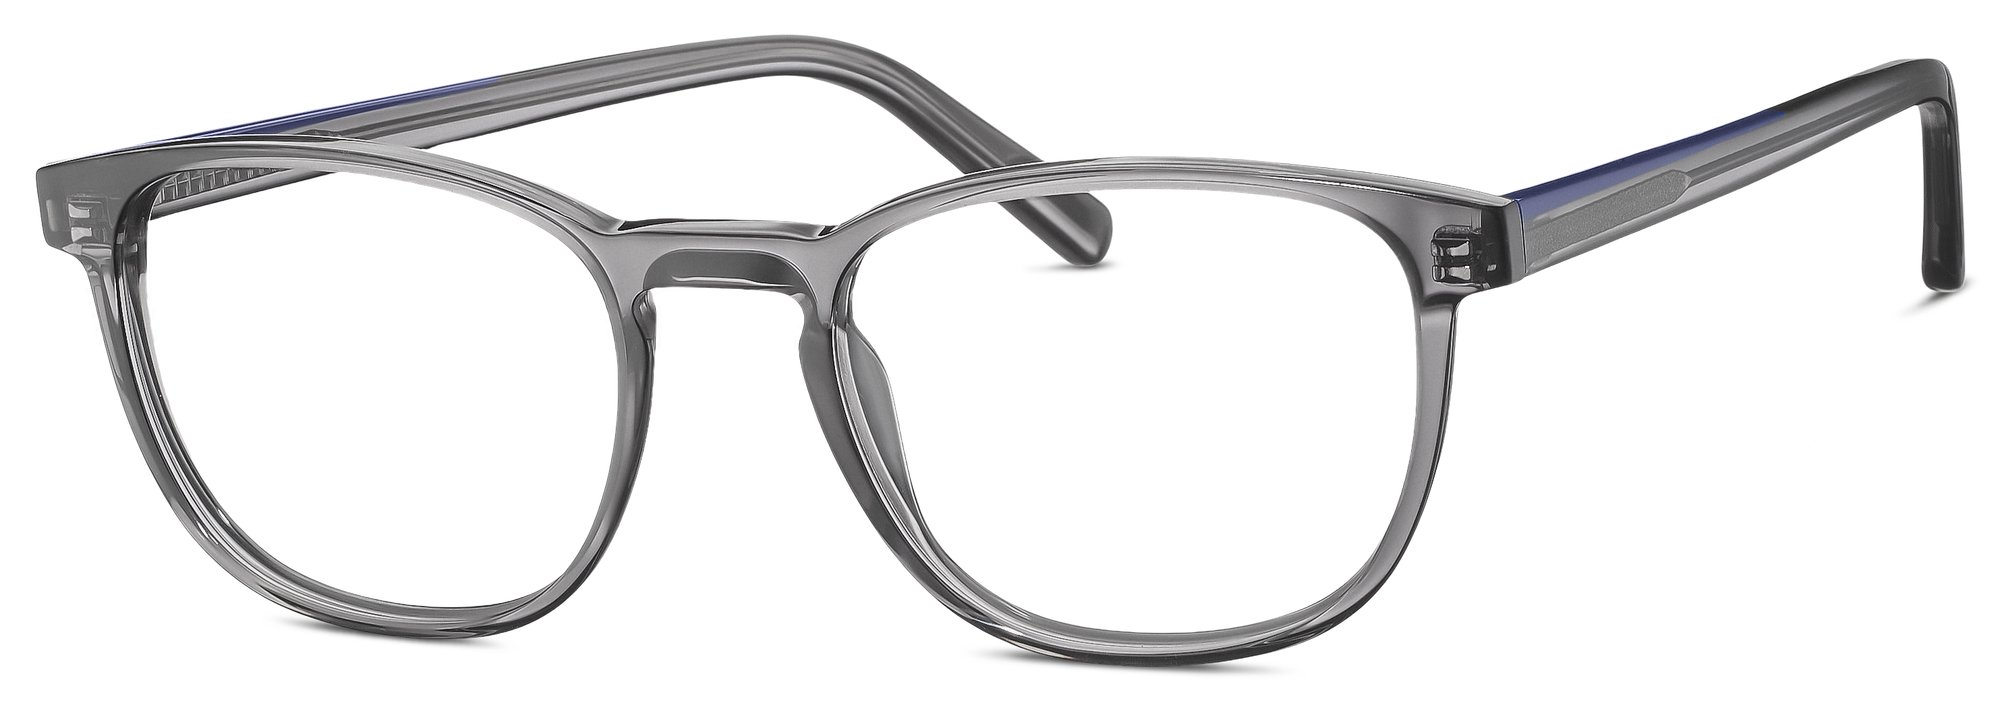 Das Bild zeigt die Korrektionsbrille 863043 30 von der Marke Freigeist in grau.